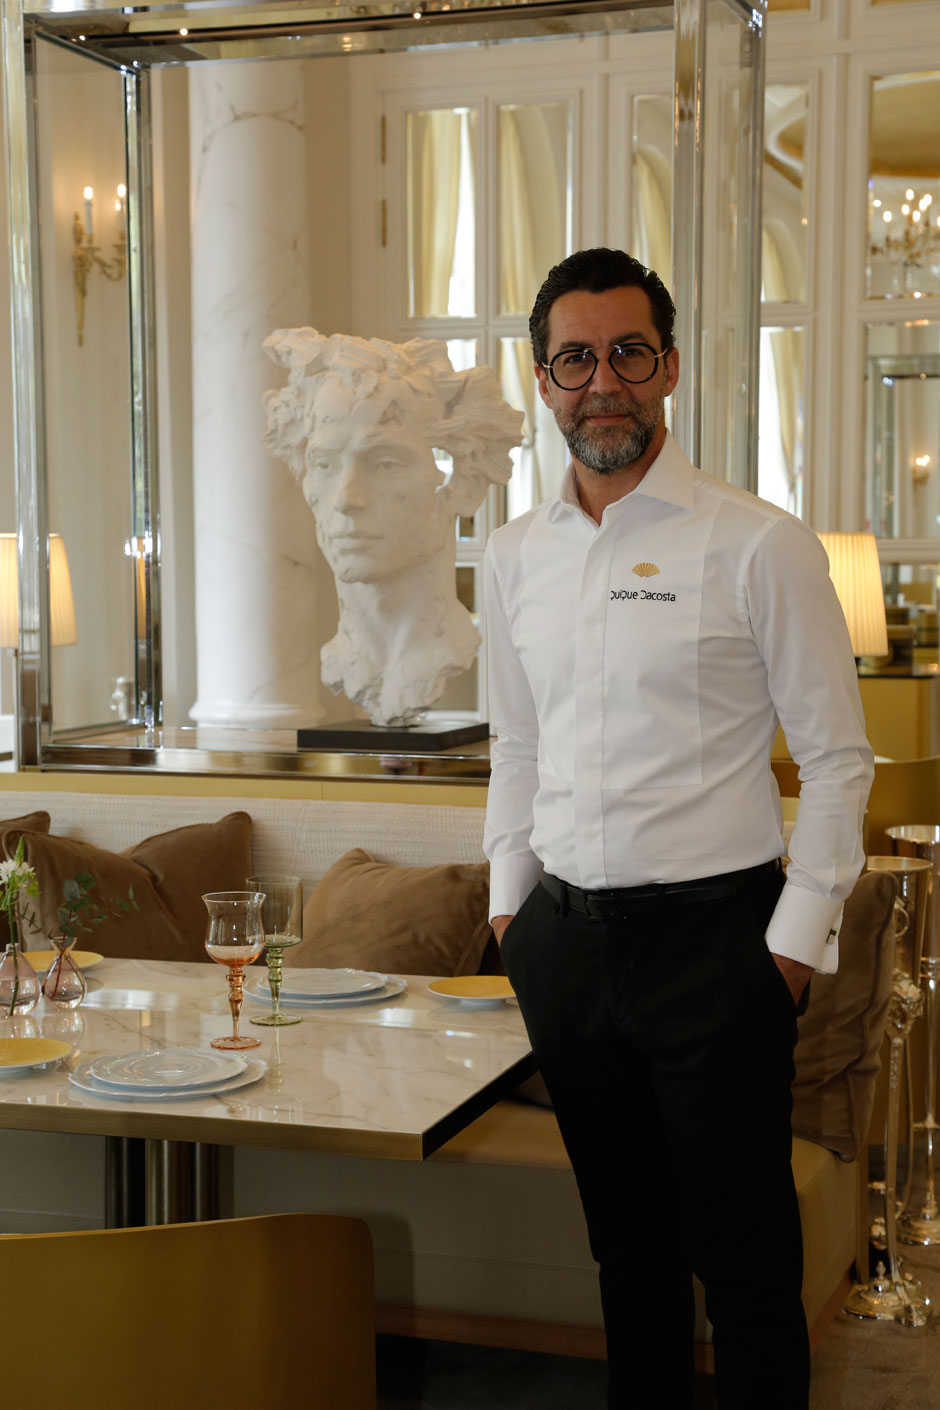 El Mandarin Oriental Ritz, Madrid abre sus puertas | Tu Gran Viaje